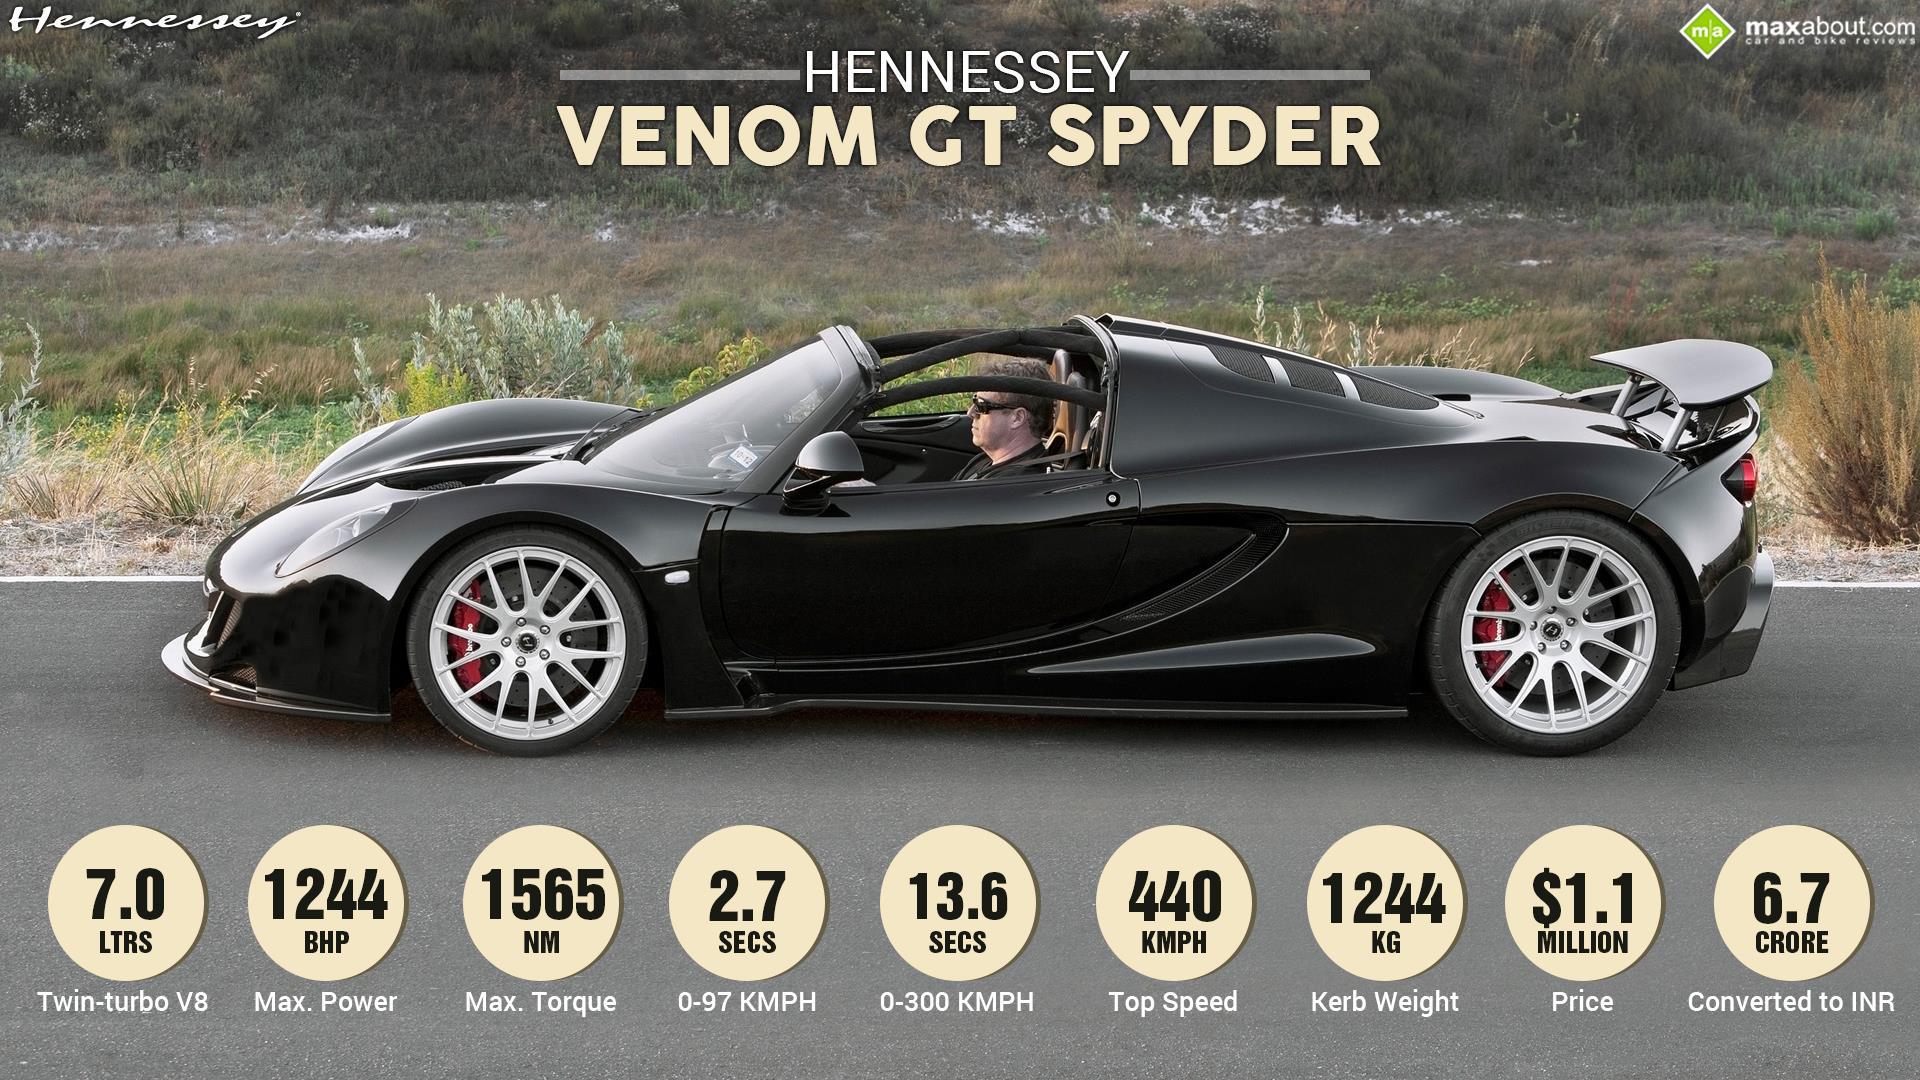 Hennessey Venom GT Spyder Side View